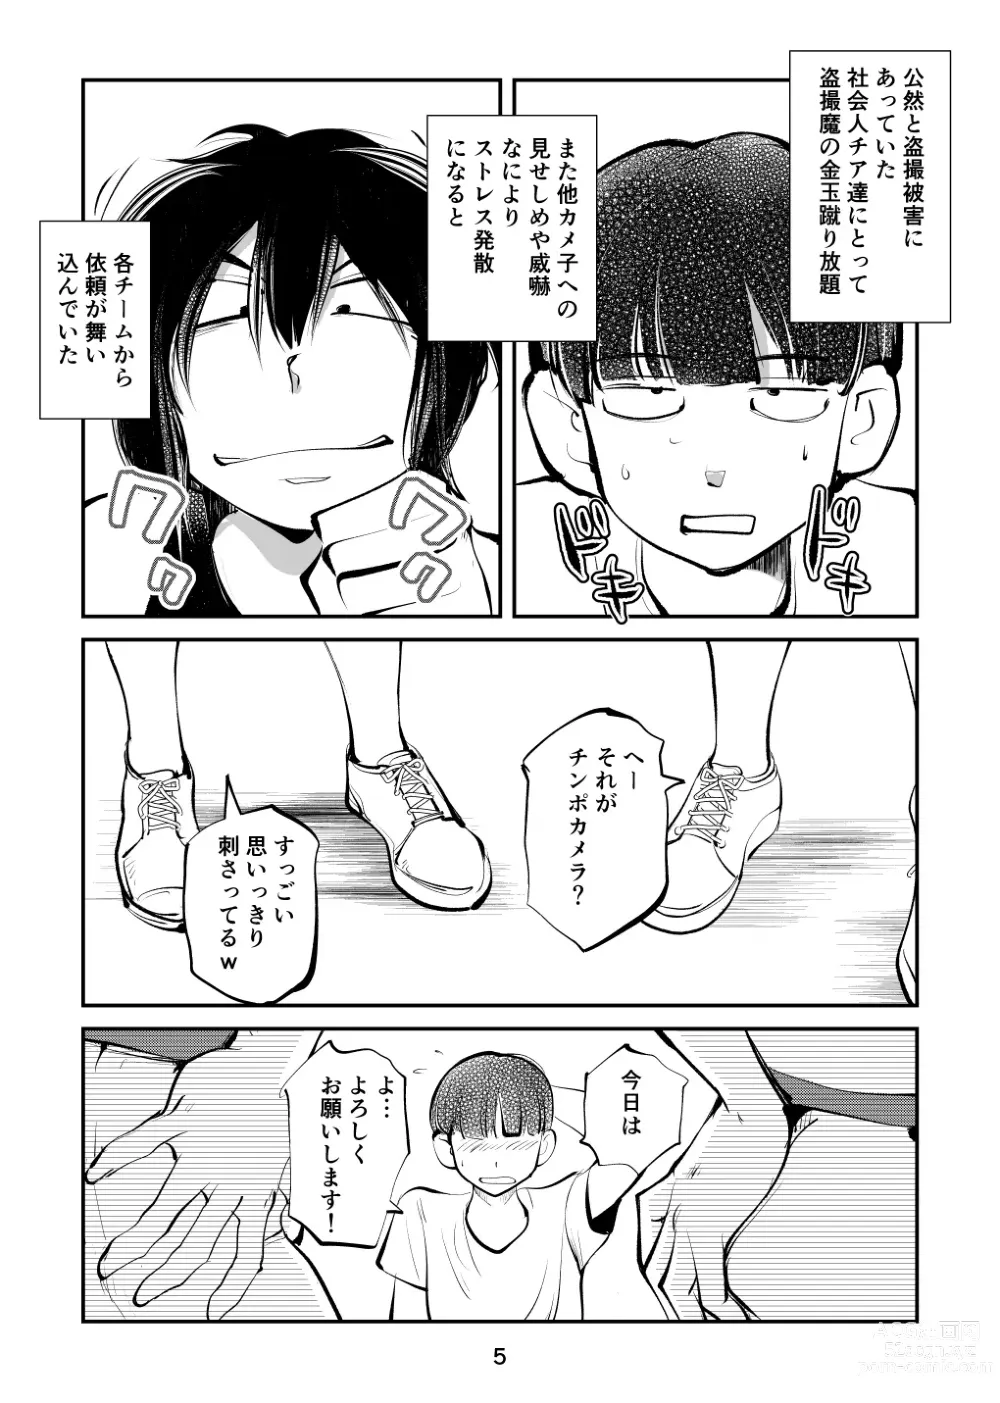 Page 5 of doujinshi Kinkeri Cheer Girl VS Tosatsuma Shakai Hito Cheer Girl-hen